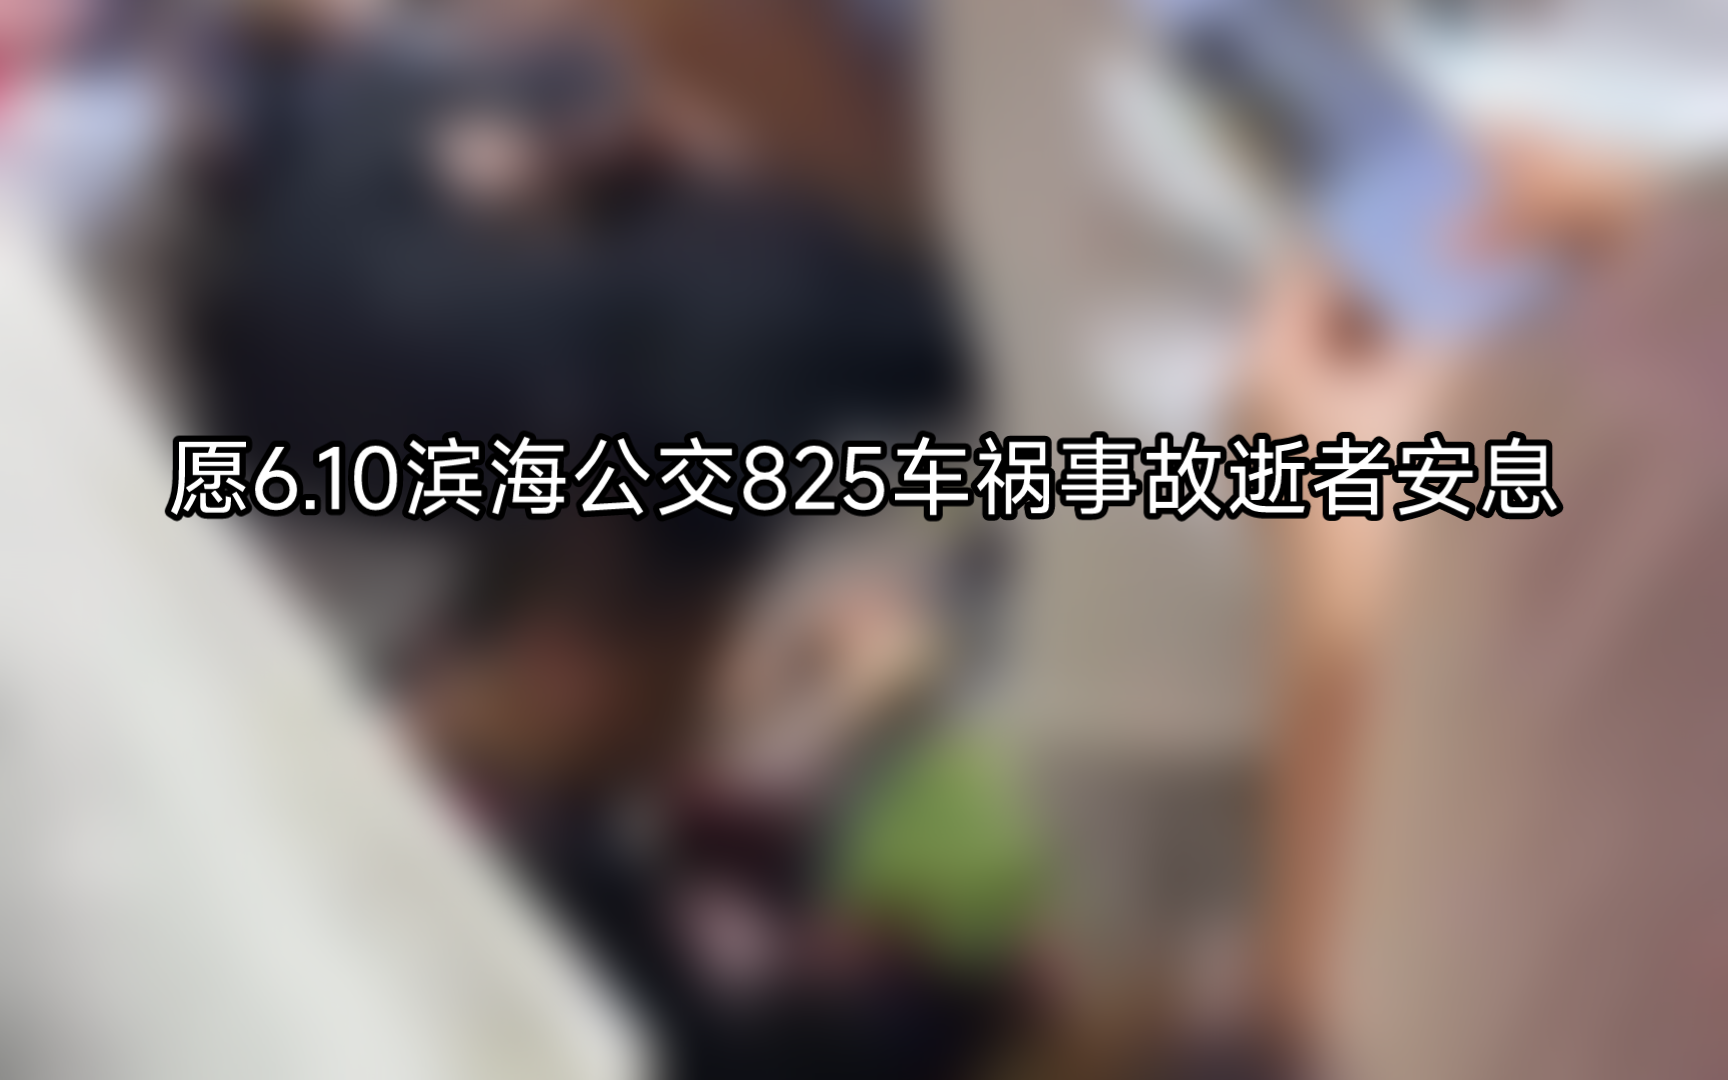 愿6.10滨海公交825车祸事故逝者安息